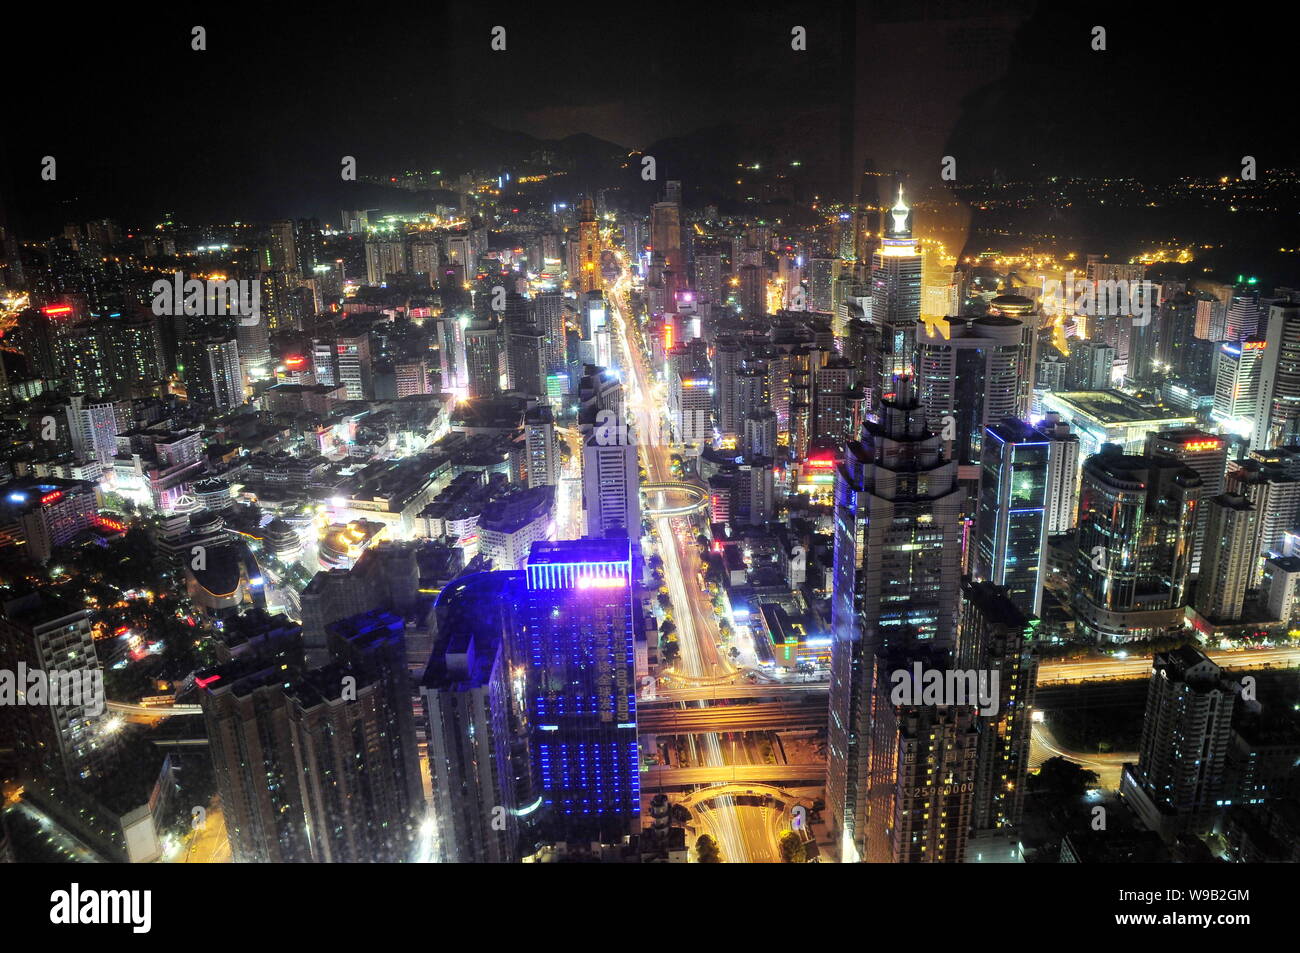 Nachtansicht von Clustern von Wolkenkratzern, Hochhaus Büro- und Wohngebäuden Mehrfamilienhäusern in Shenzhen City, South China Guangdong Provinz, 10 Augu Stockfoto